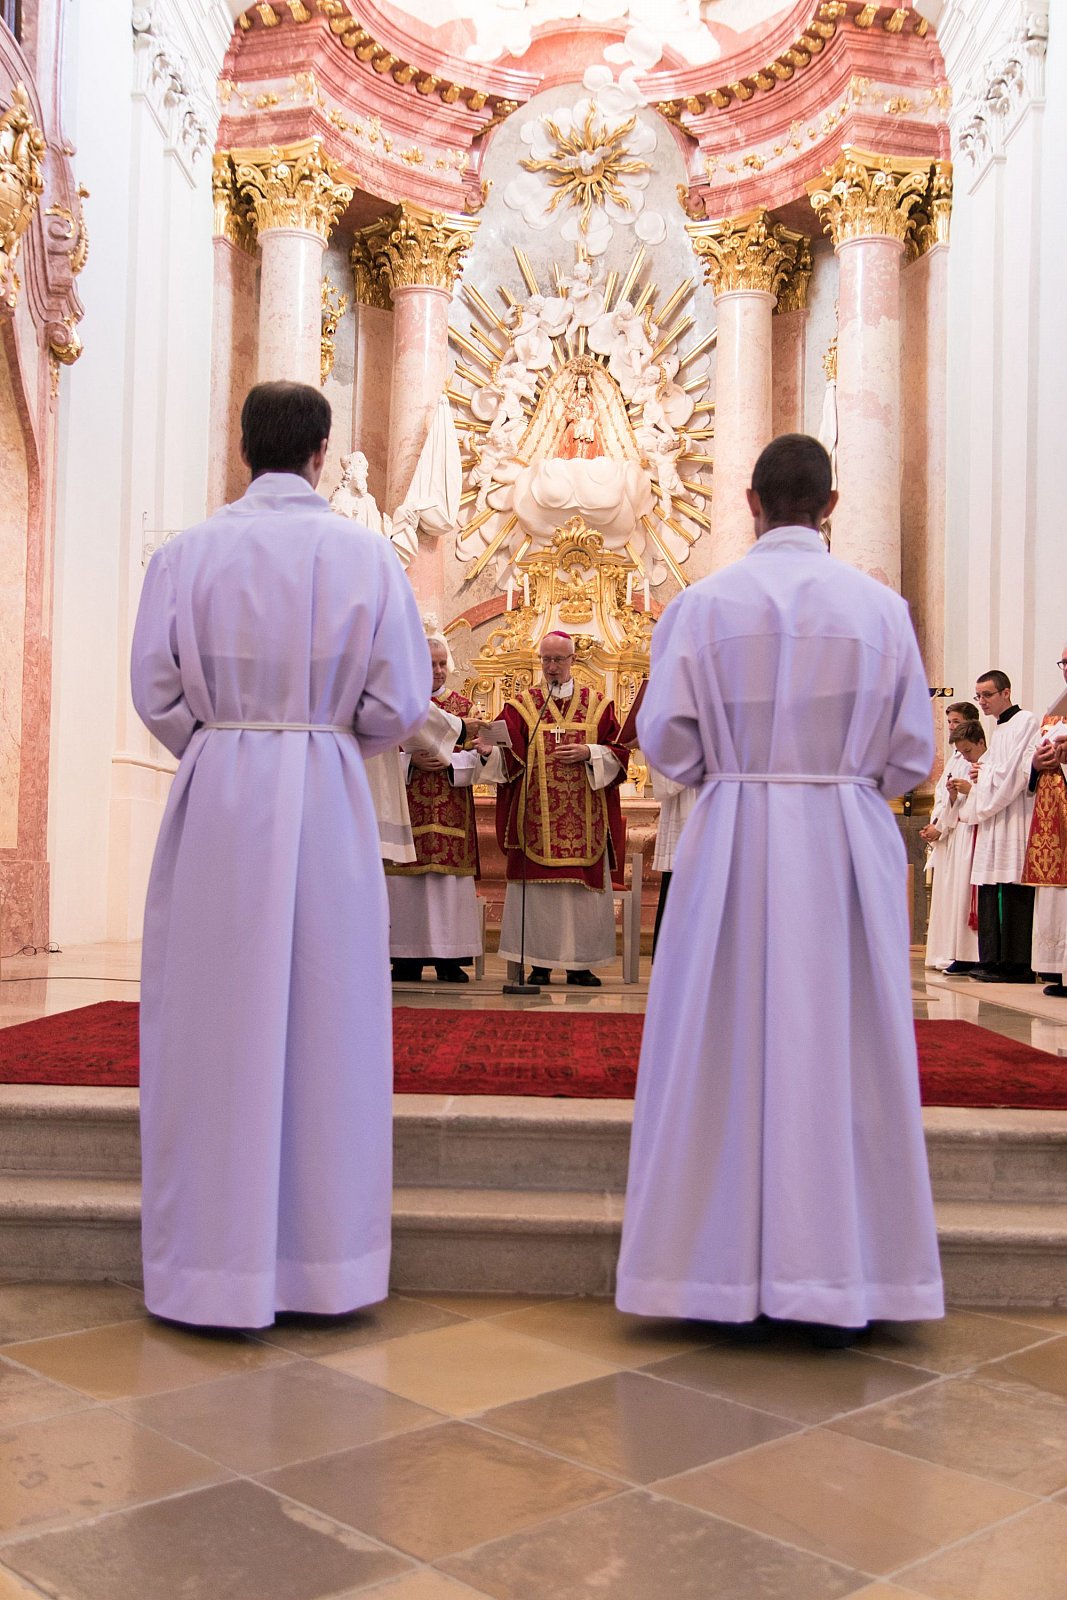 Consacrazione diaconale di Fr. Michael G. e Fr. Martin P.